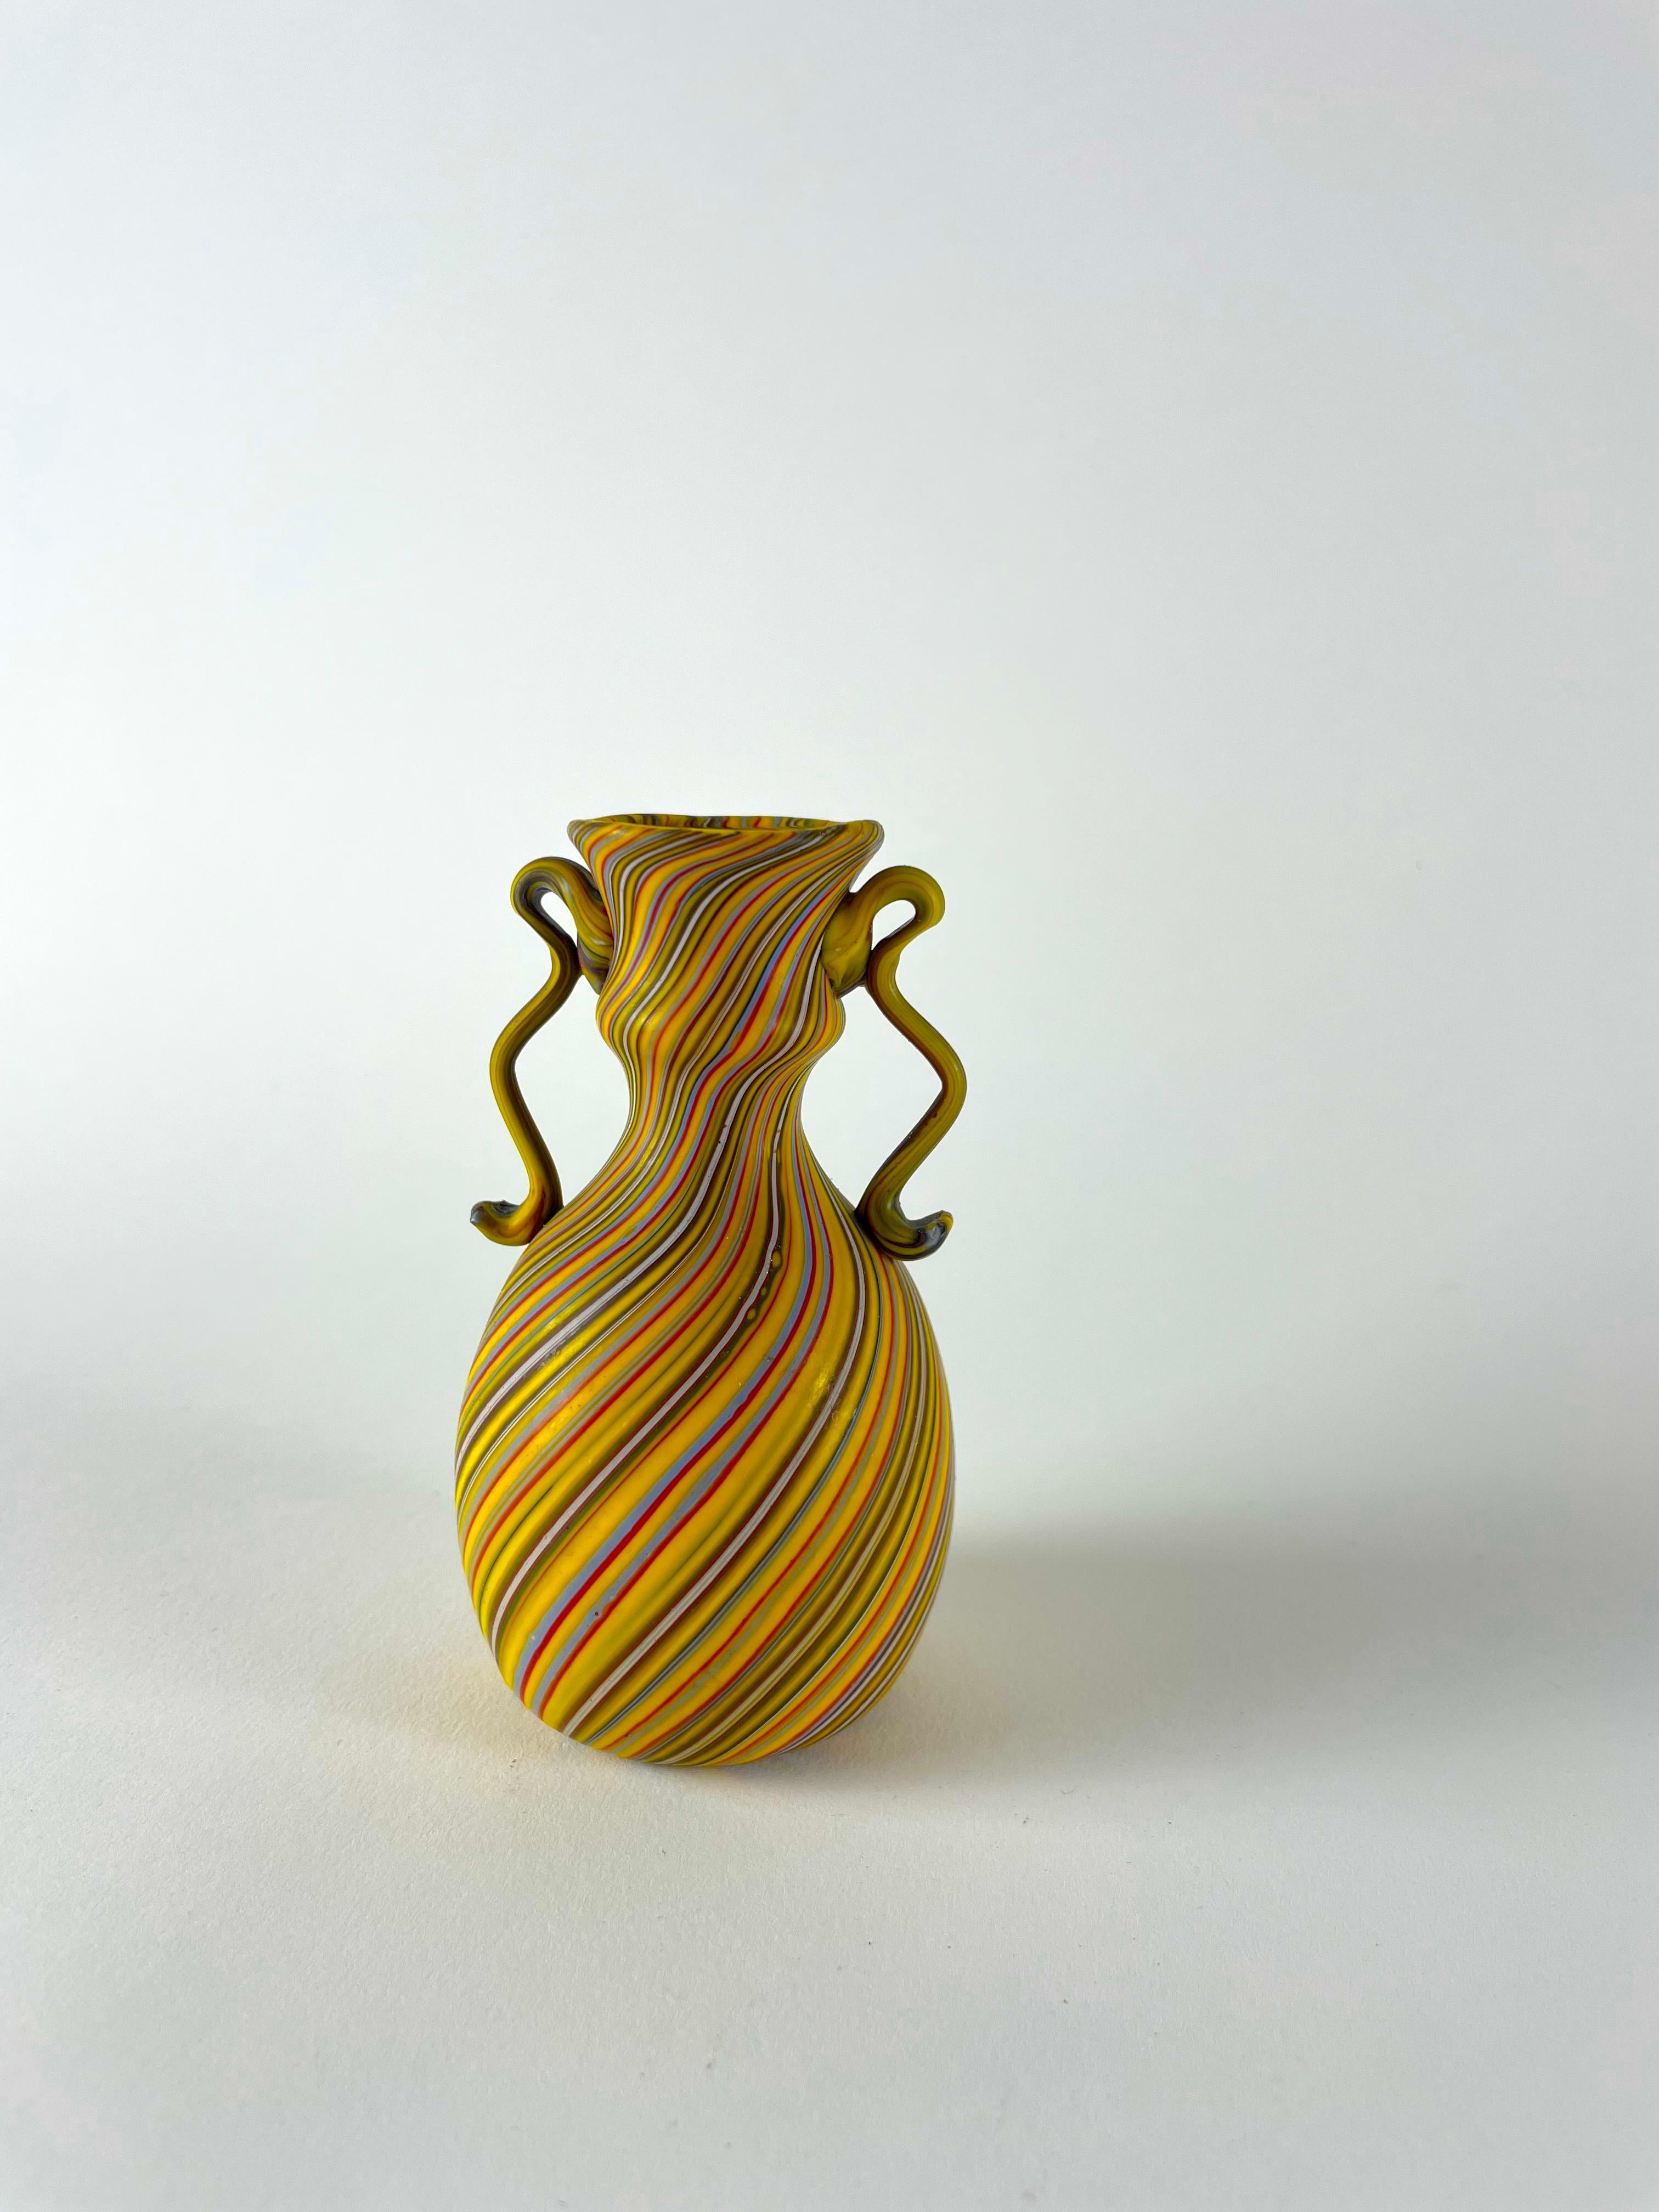 Voici le Vaso a canne, un petit trésor qui incarne l'incroyable savoir-faire de Murano. Ce vase exquis est méticuleusement fabriqué à la main selon une technique unique, avec de petites cannes de verre disposées selon un motif régulier et